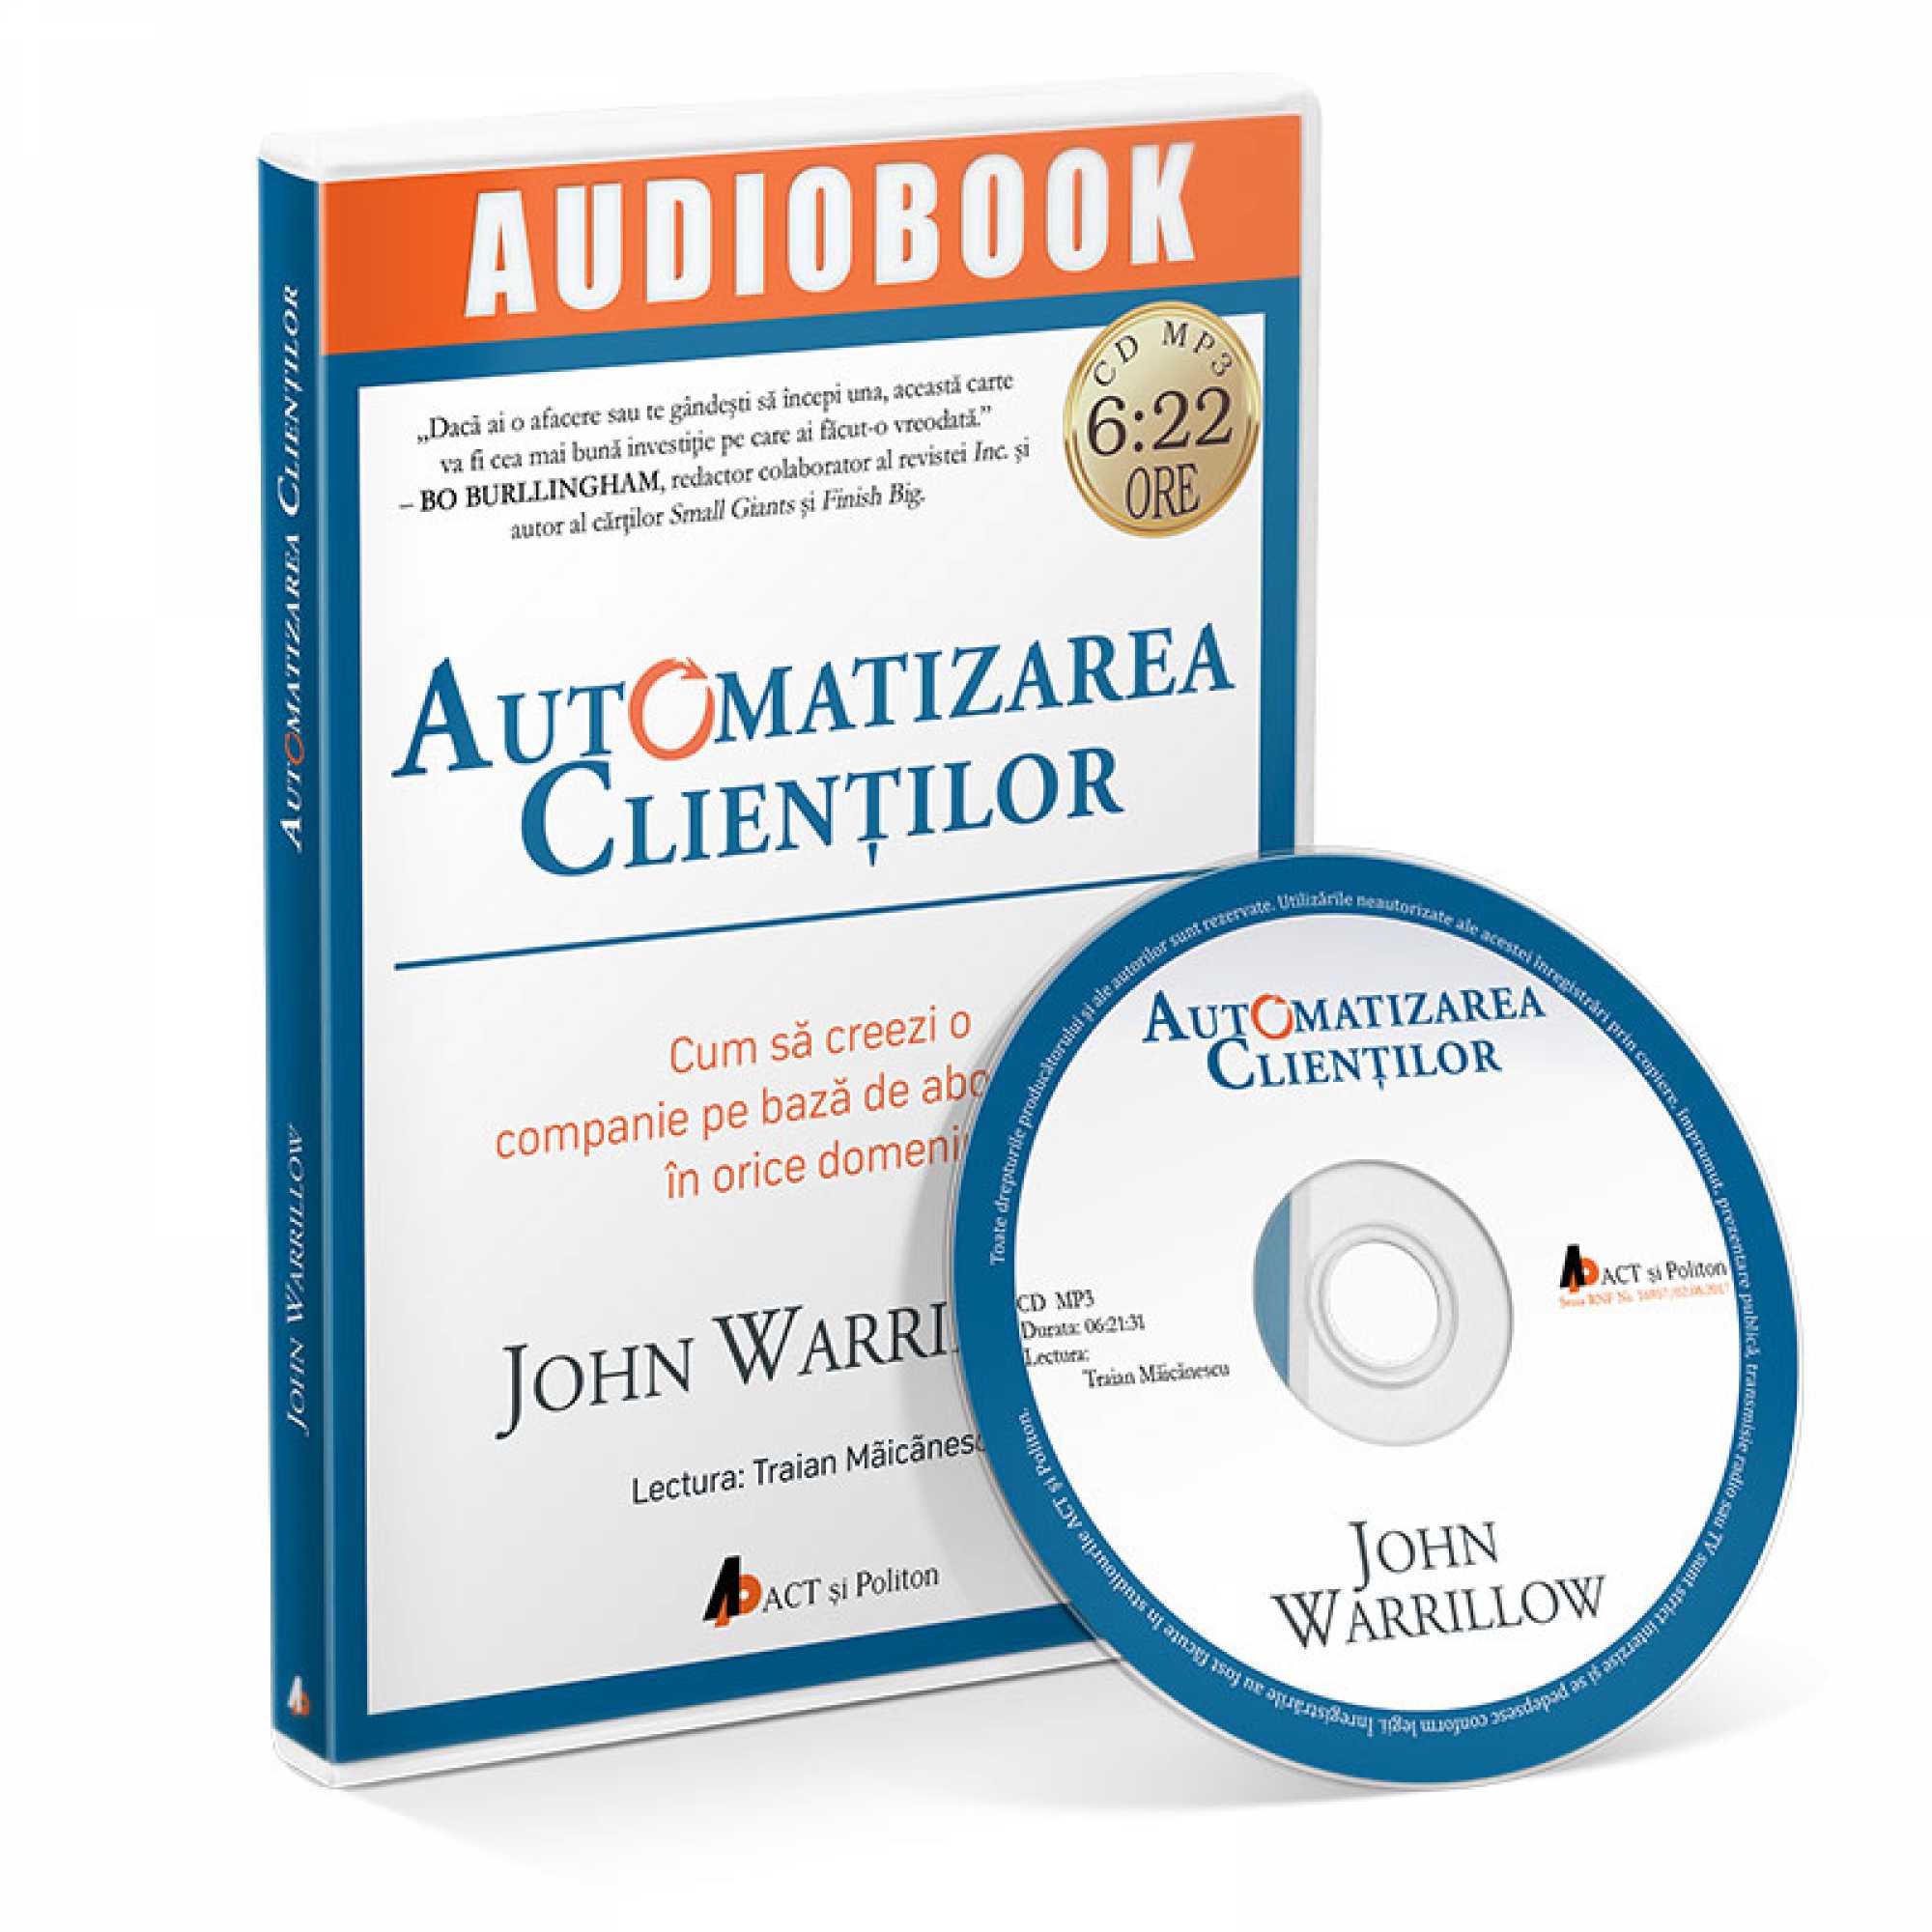 Automatizarea clientilor – Audiobook | John Warrillow carturesti 2022